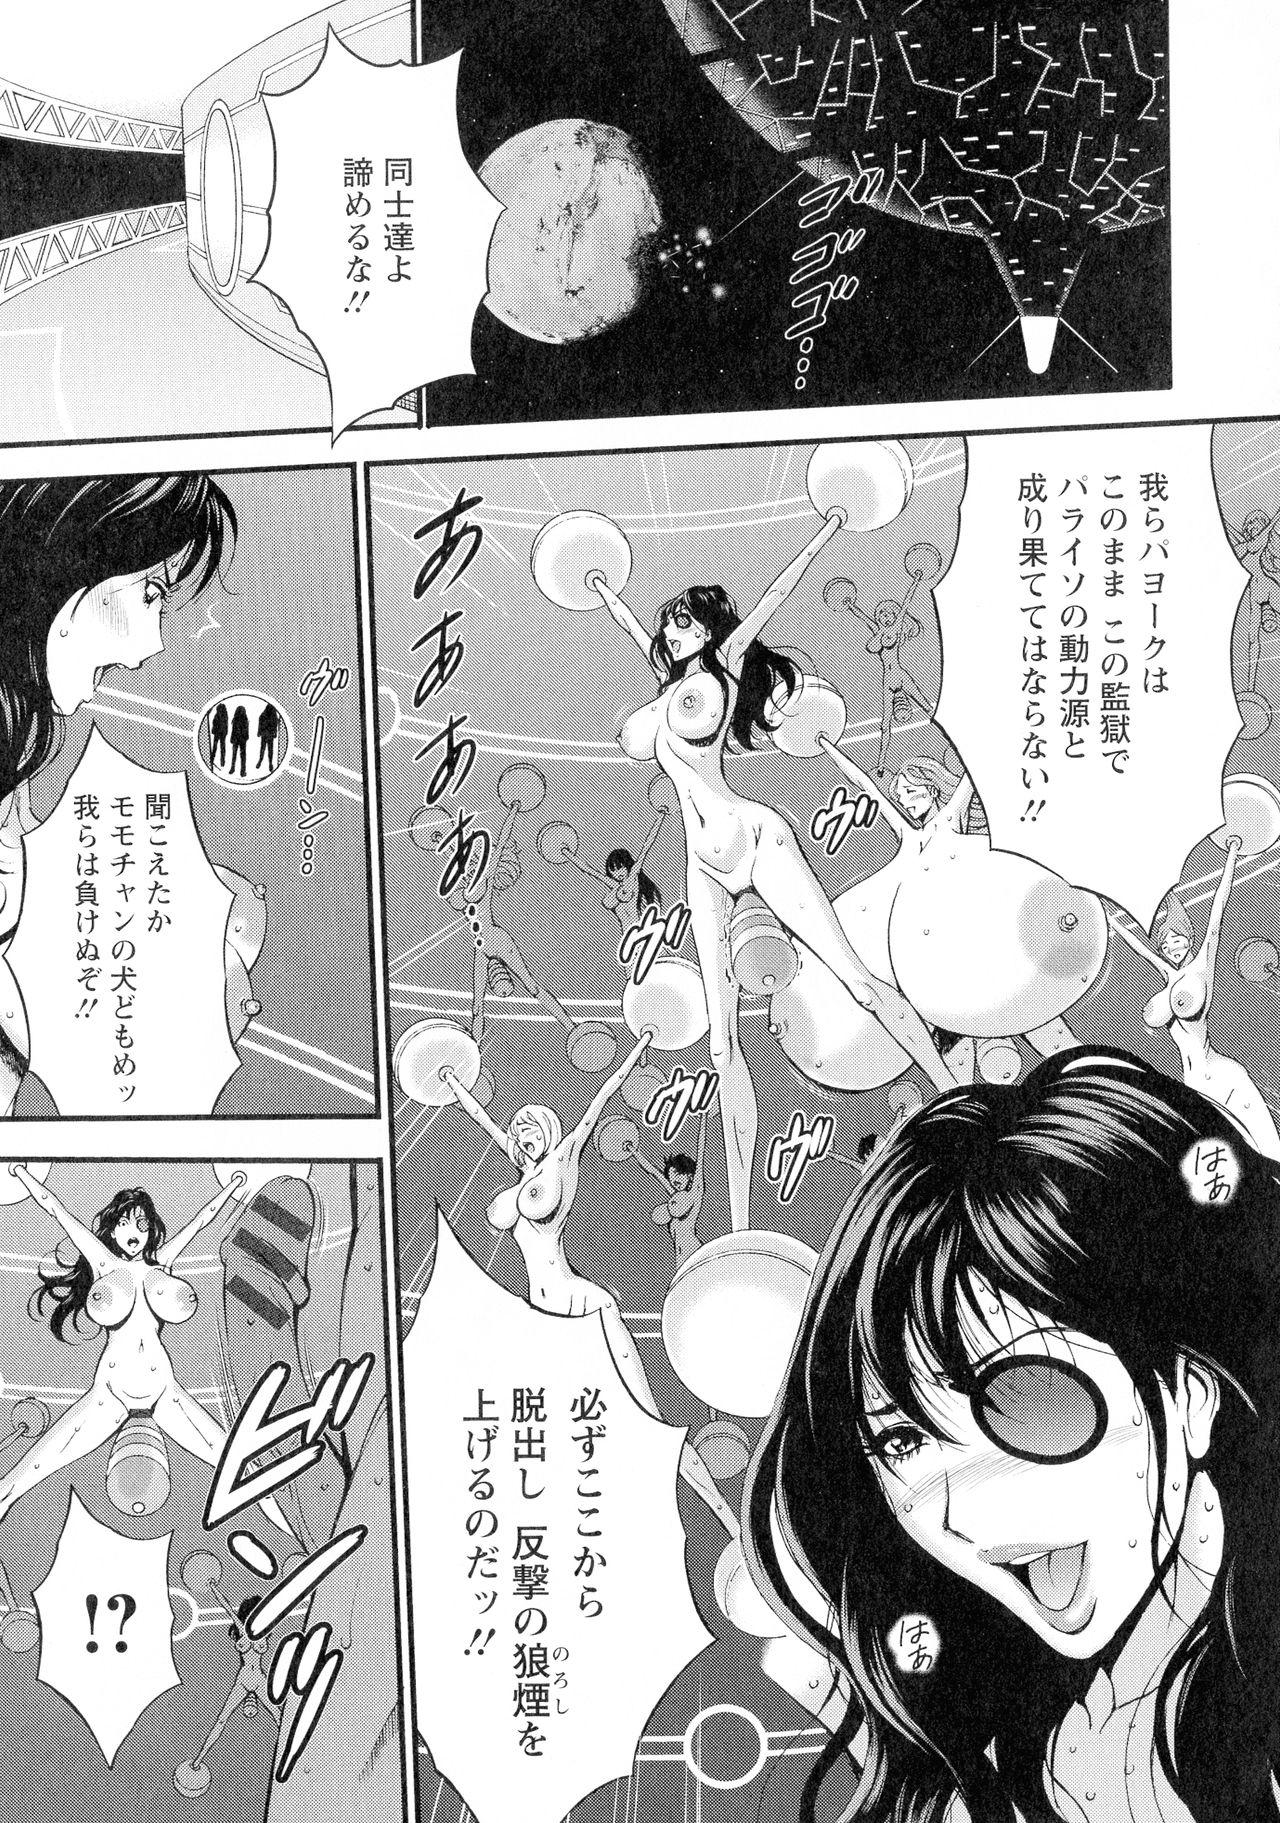 [Nakashima Chosuke] Seireki 2200-nen no Ota 3 Zetchou Time-Slip Girl 131